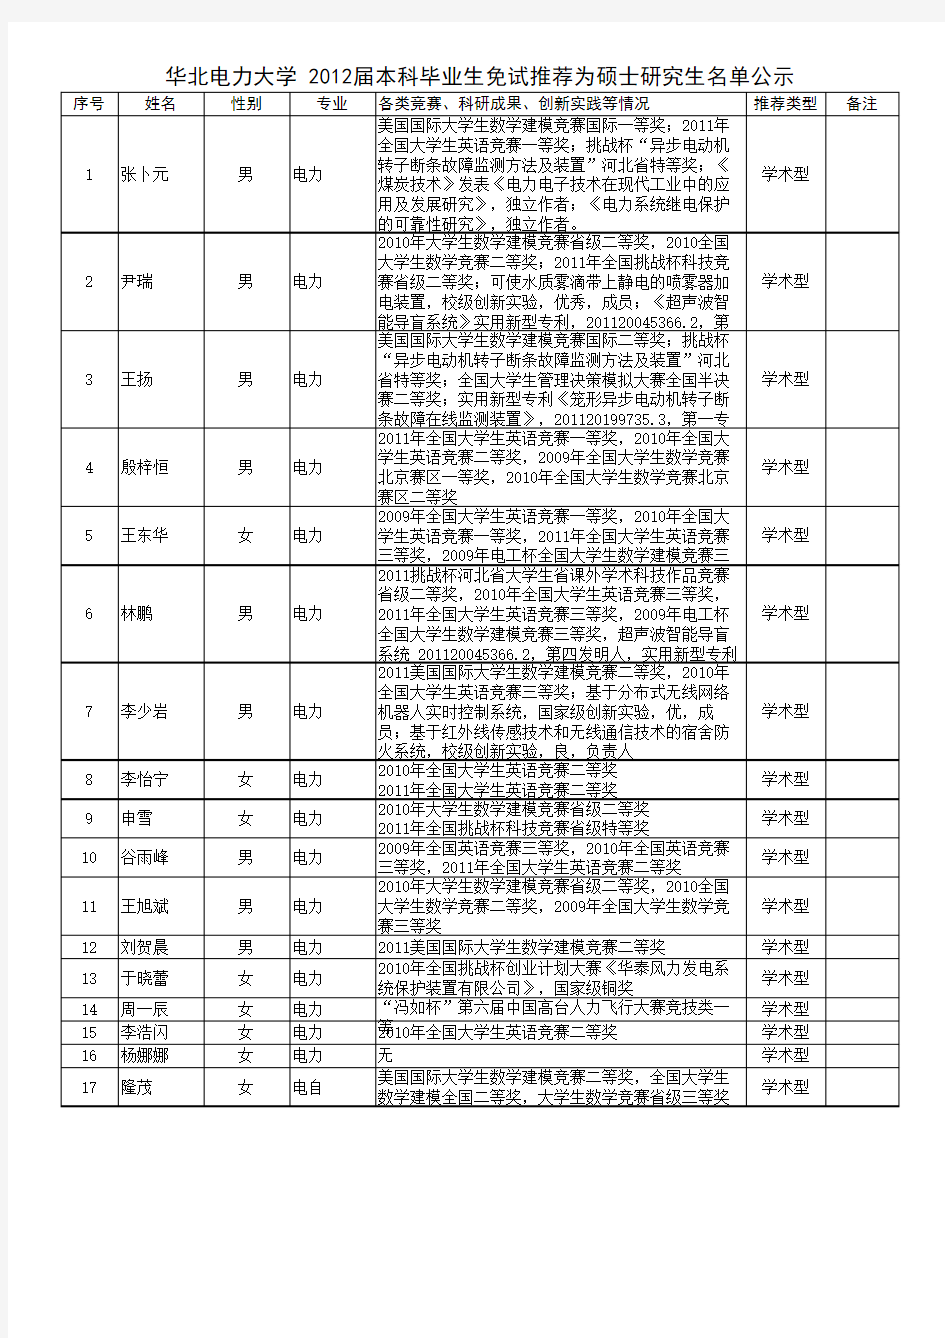 2012华北电力大学保研公示名单(上网)(2)